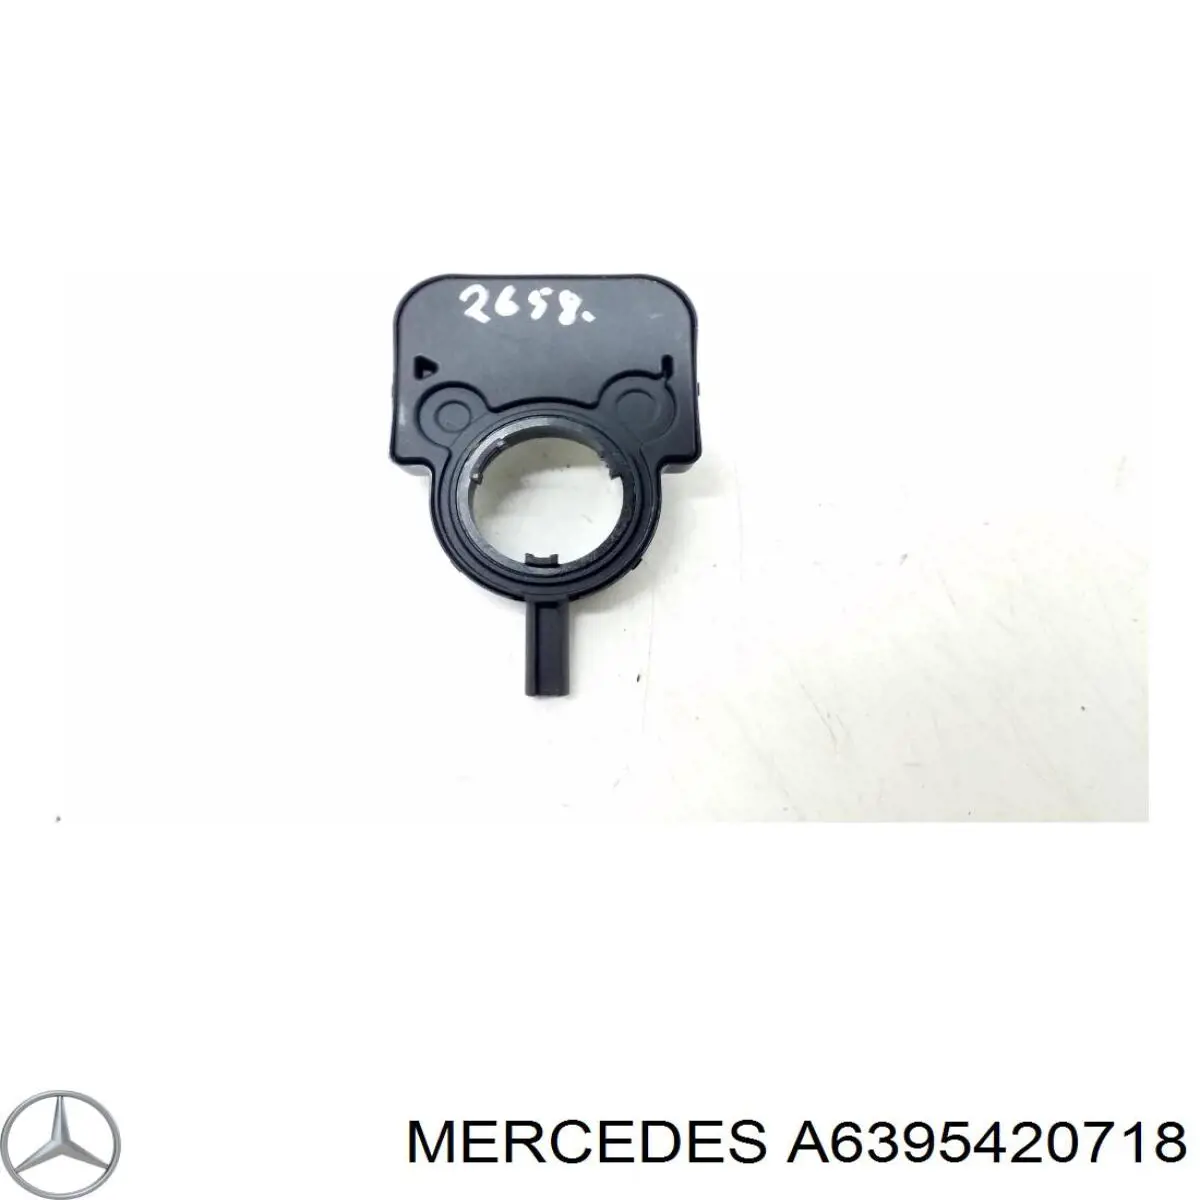 A639542071864 Mercedes sensor do ângulo de viragem do volante de direção